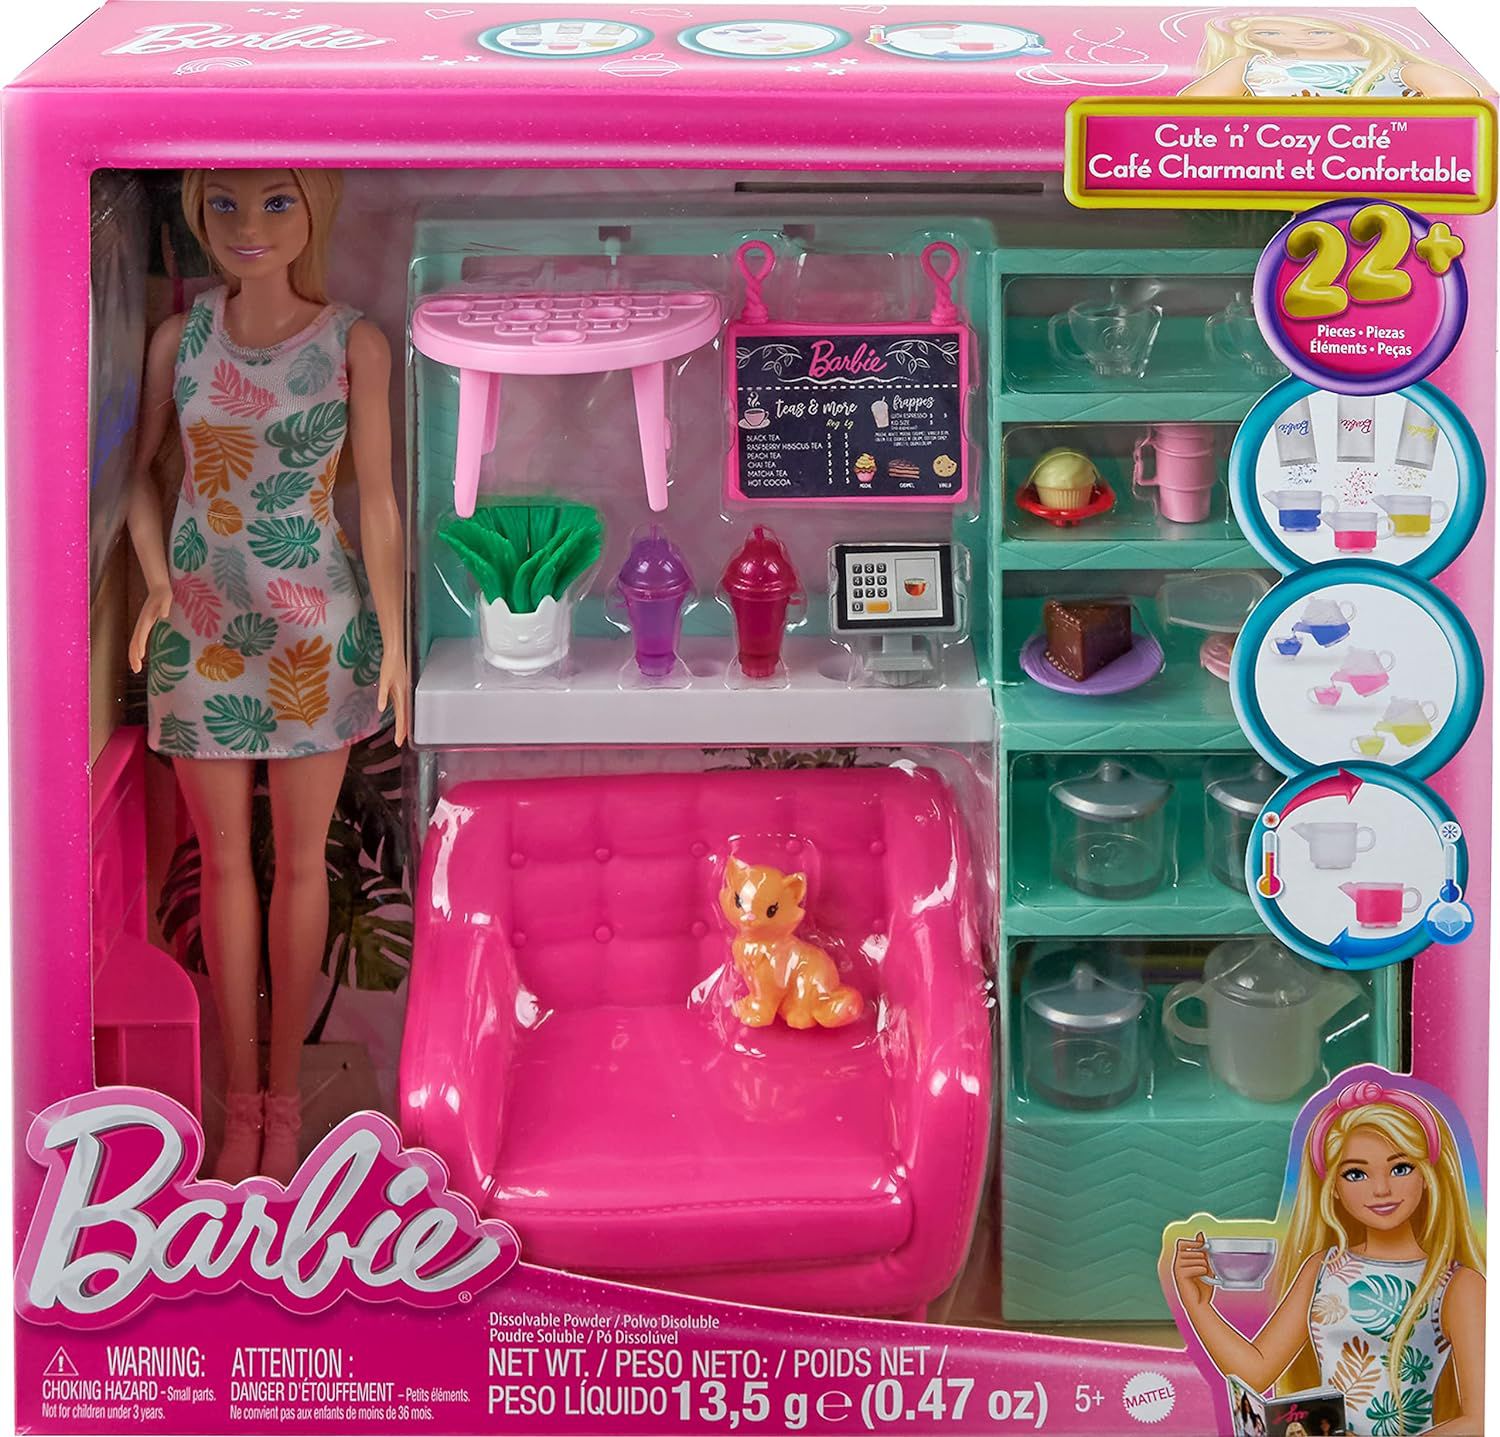 Jogo de Memória Barbie - Loja Grow